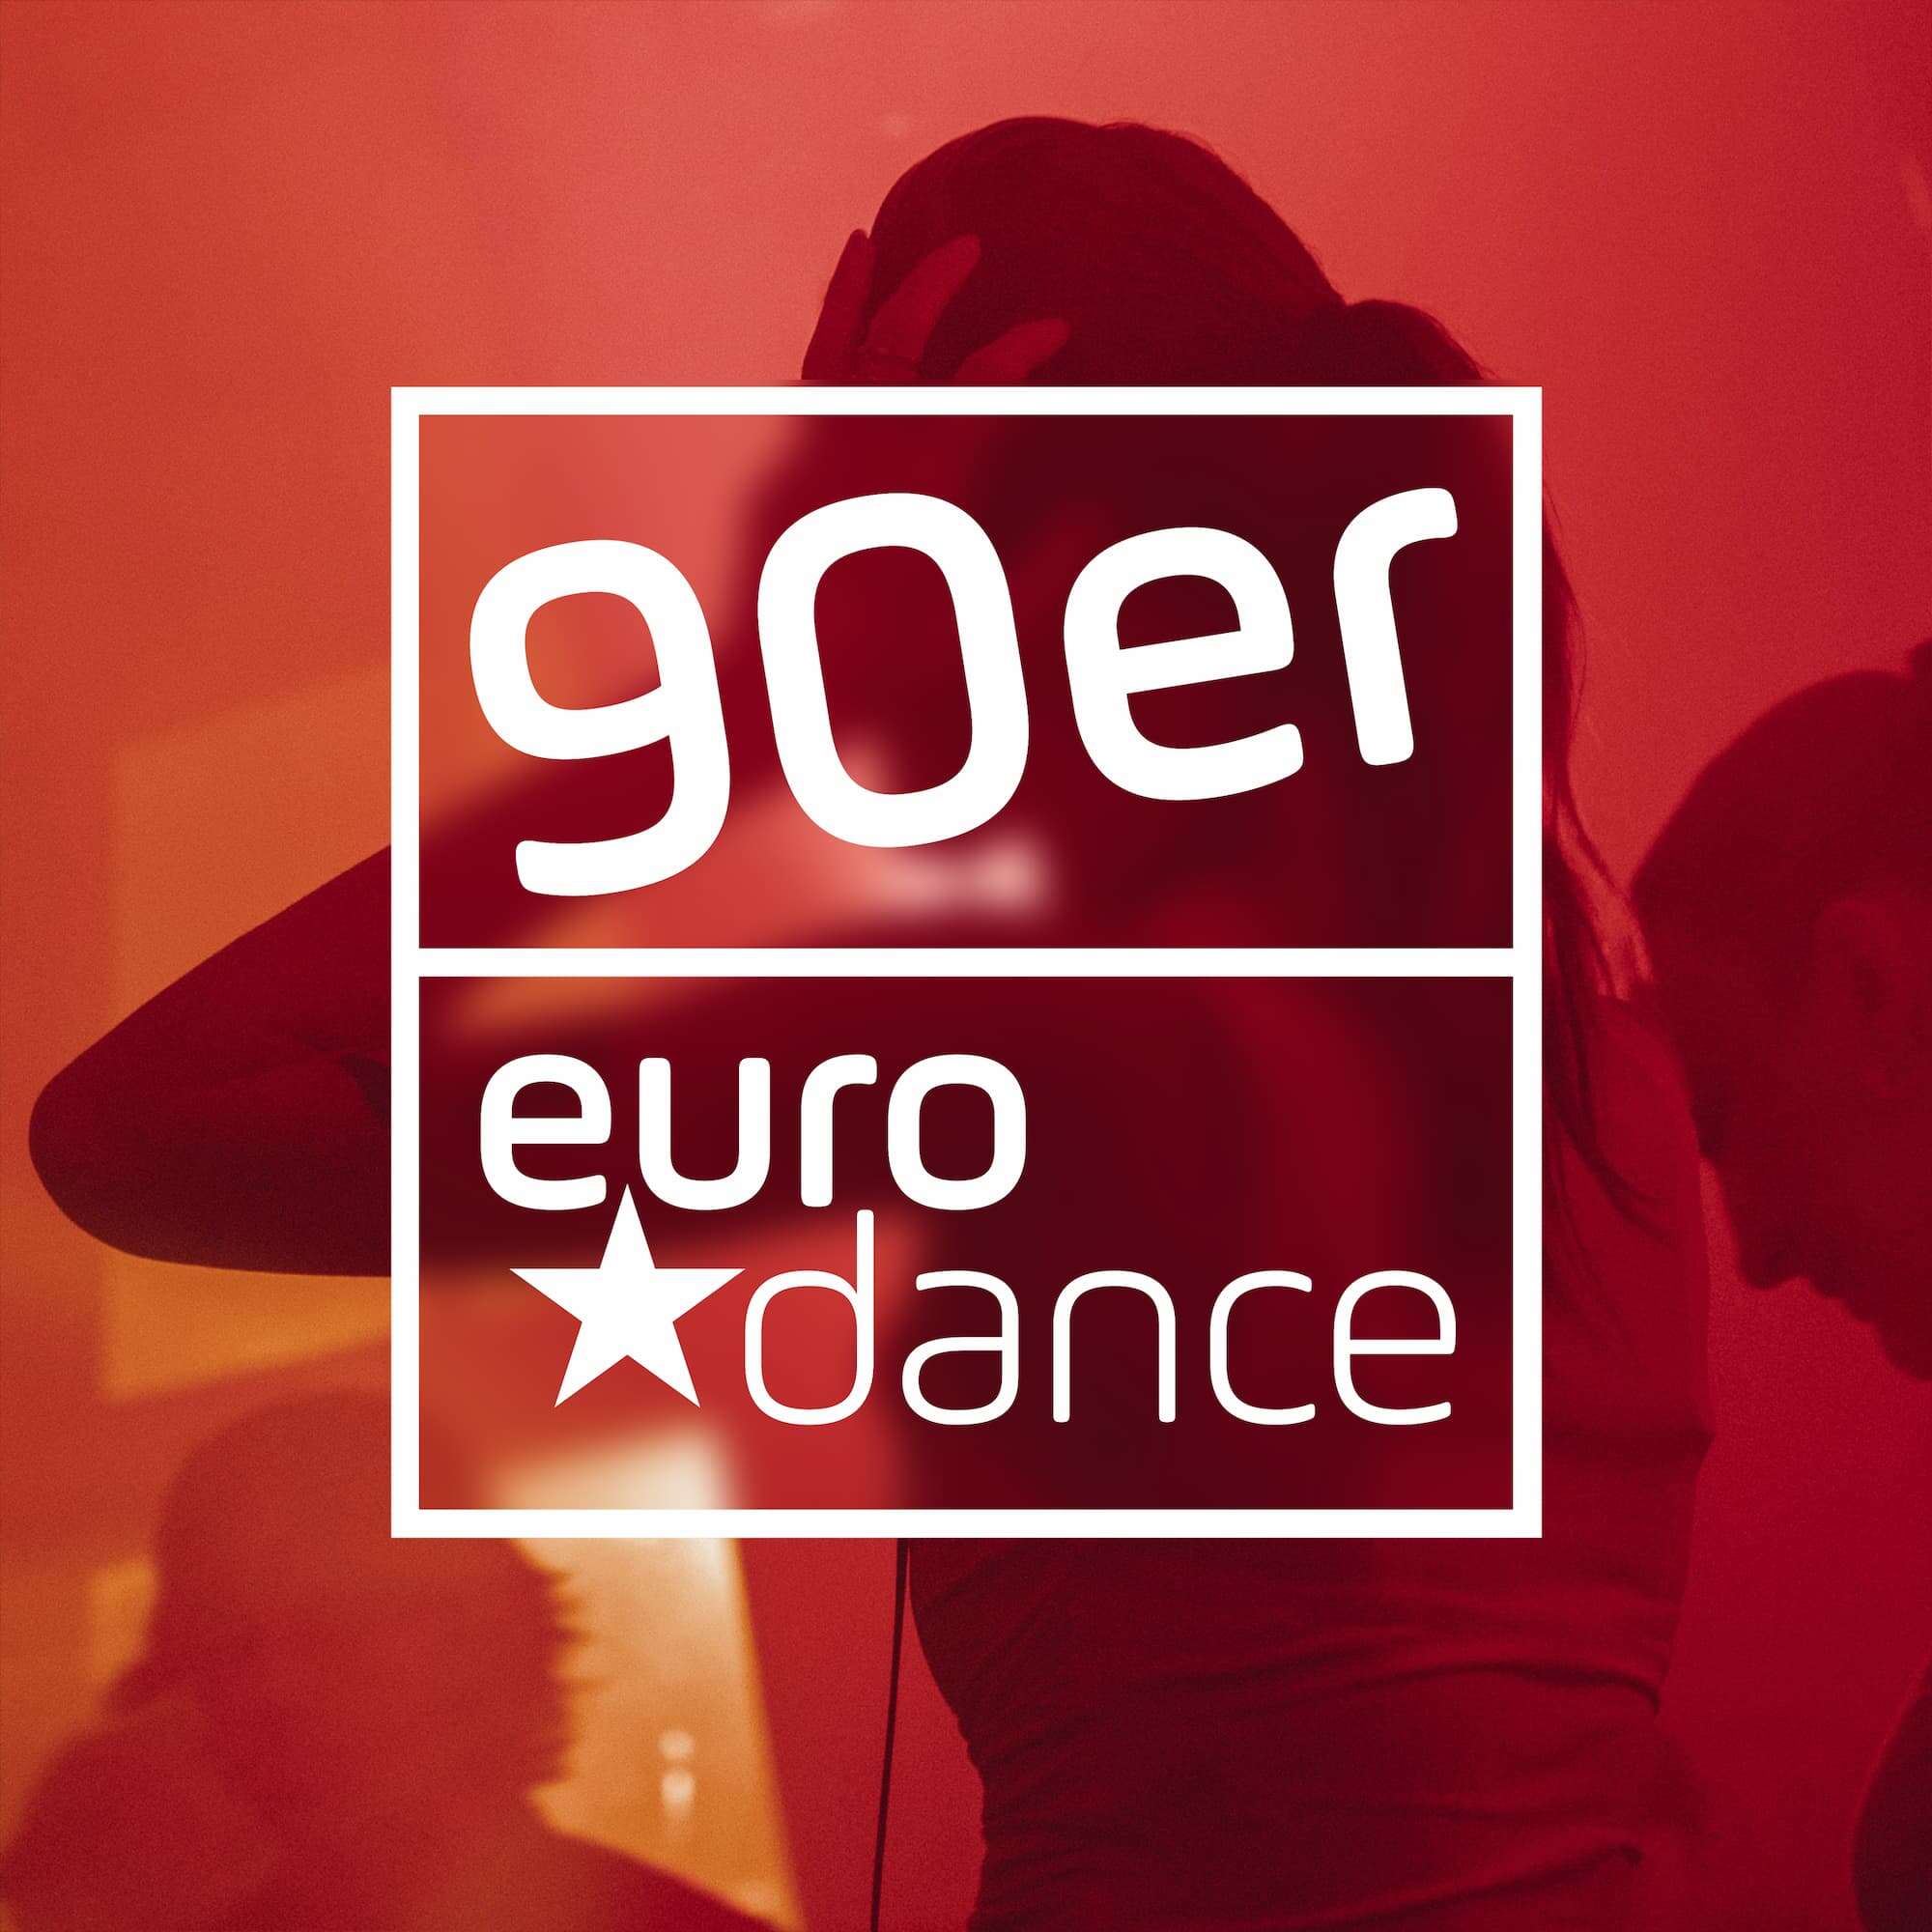 90er Eurodance